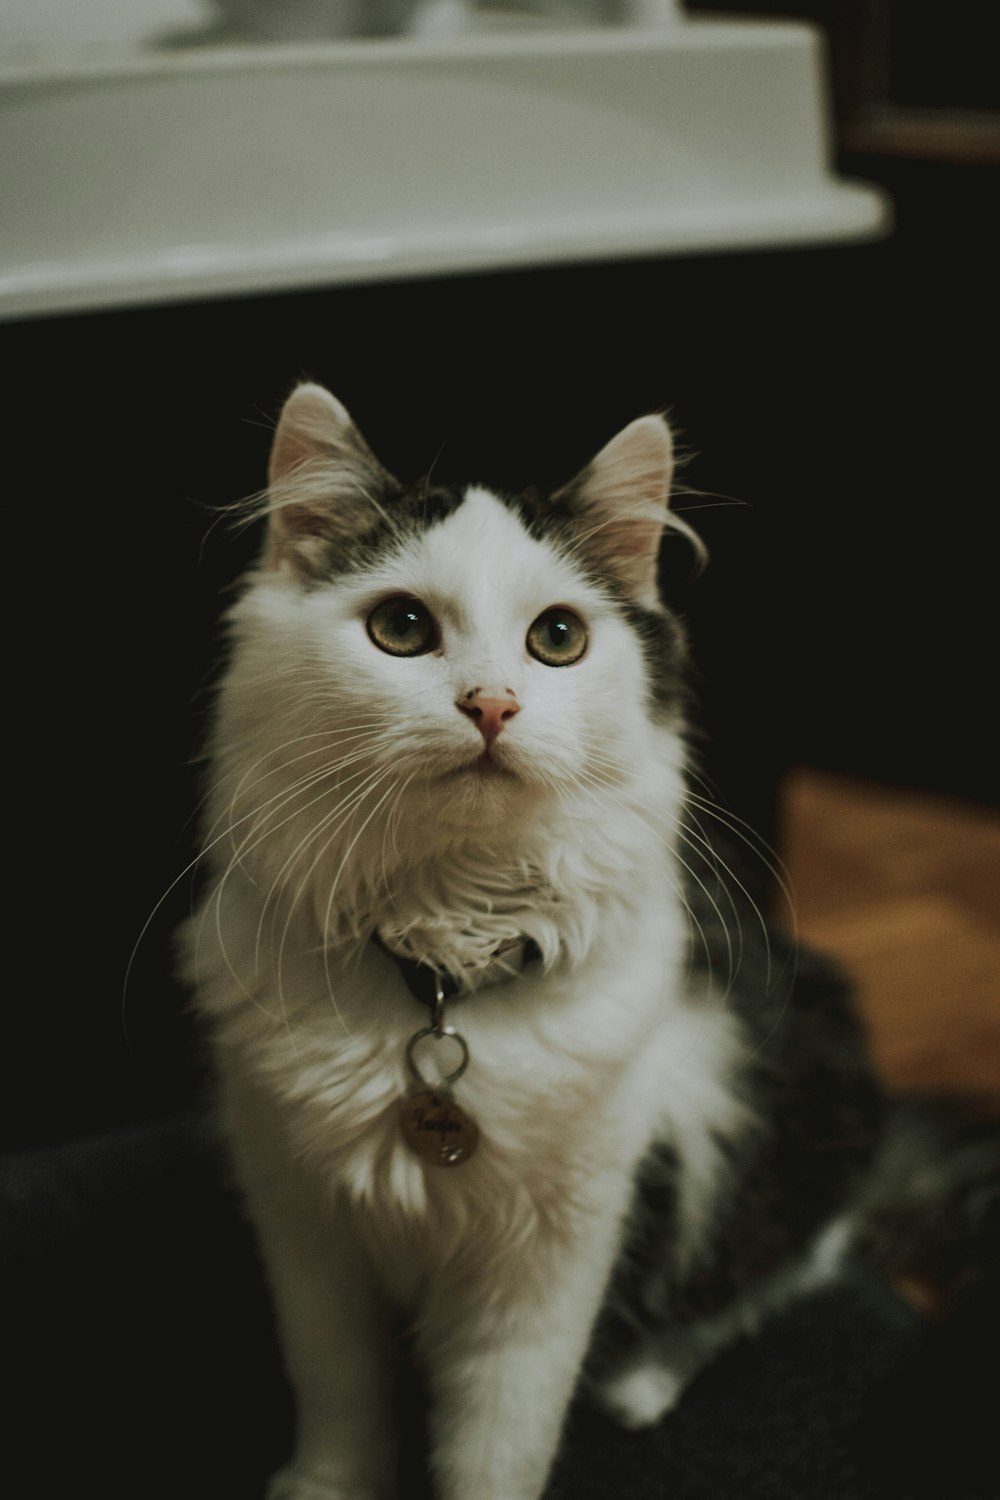 fotografia ravvicinata di gatto bianco e nero a pelo lungo